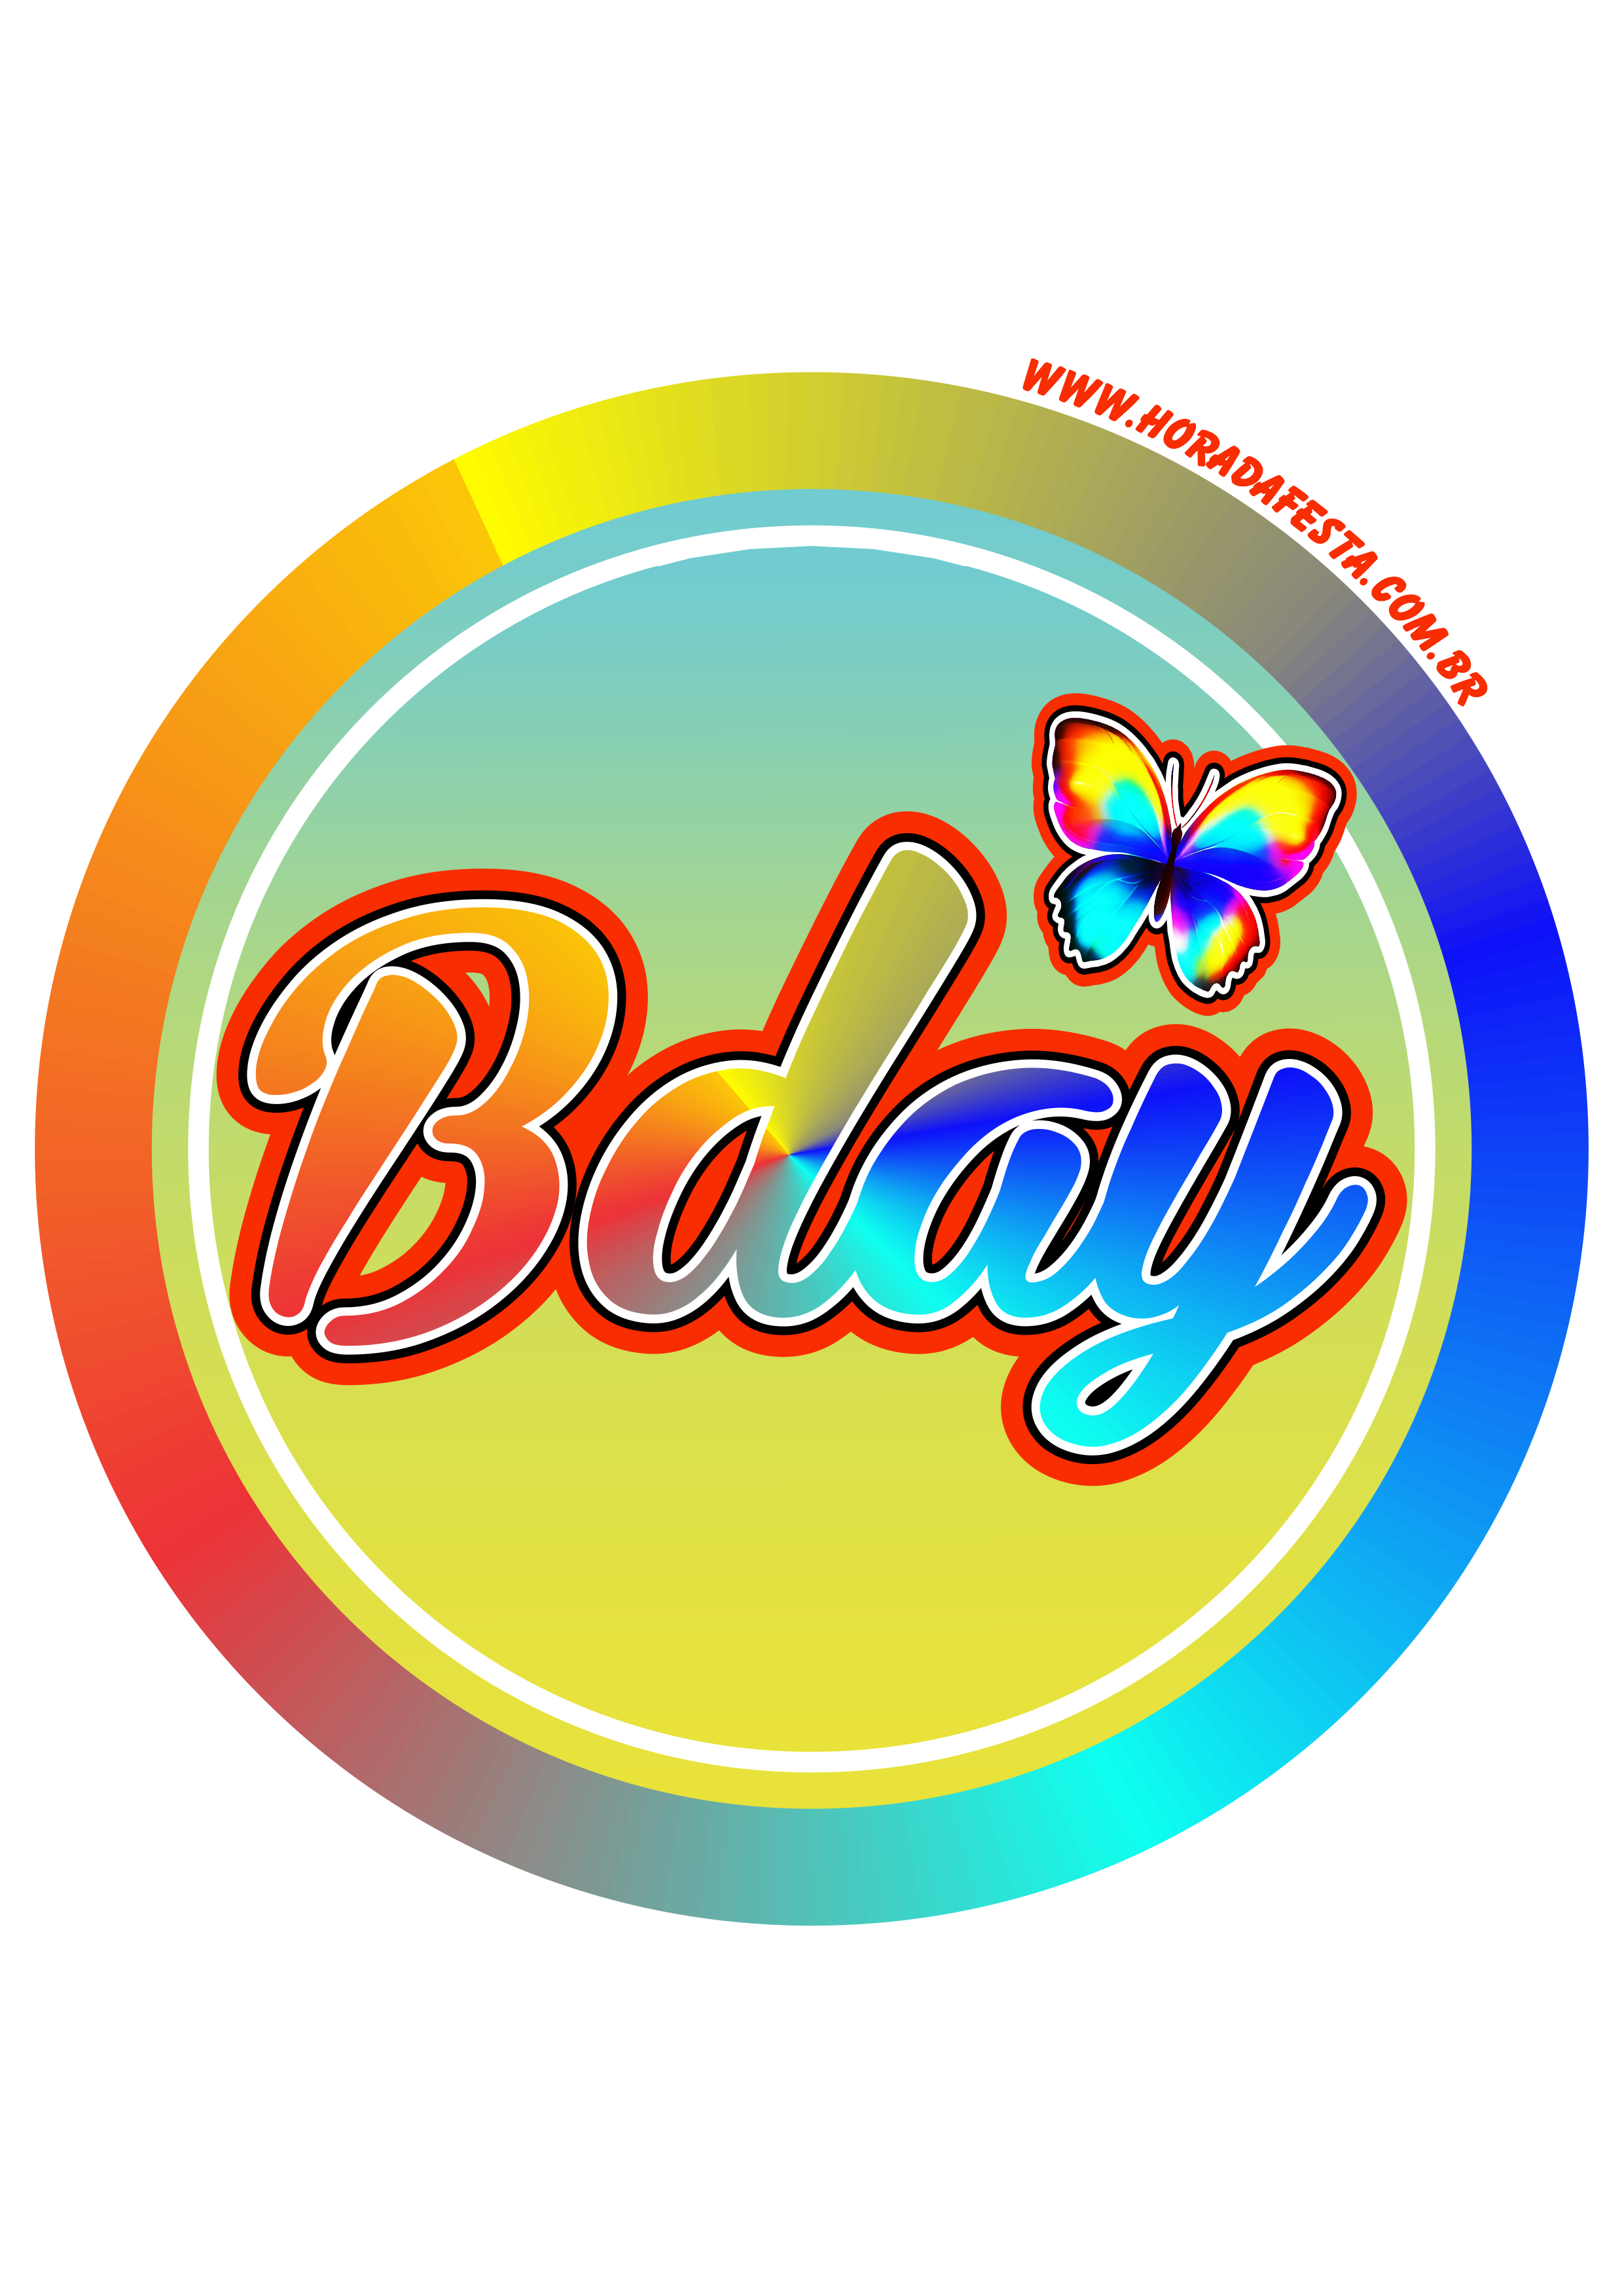 Happy birthday Bday adesivo redondo para decoração de mimos de aniversário e painel de festa png